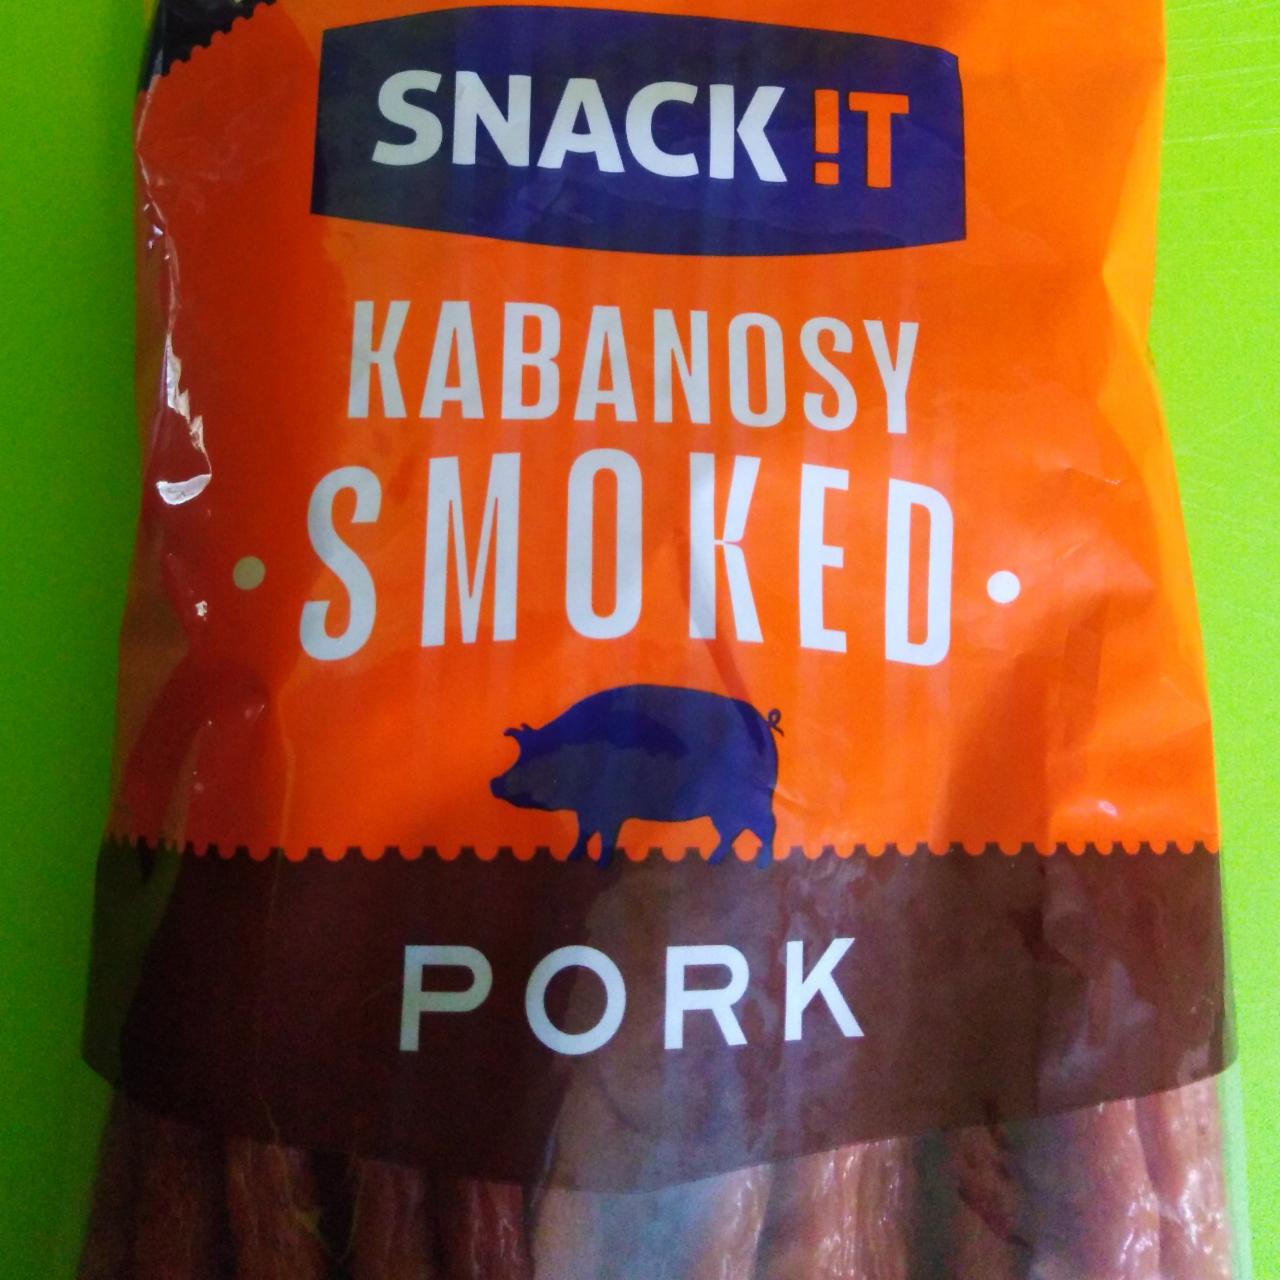 Fotografie - Smoked Kabanos Pork Snack!T